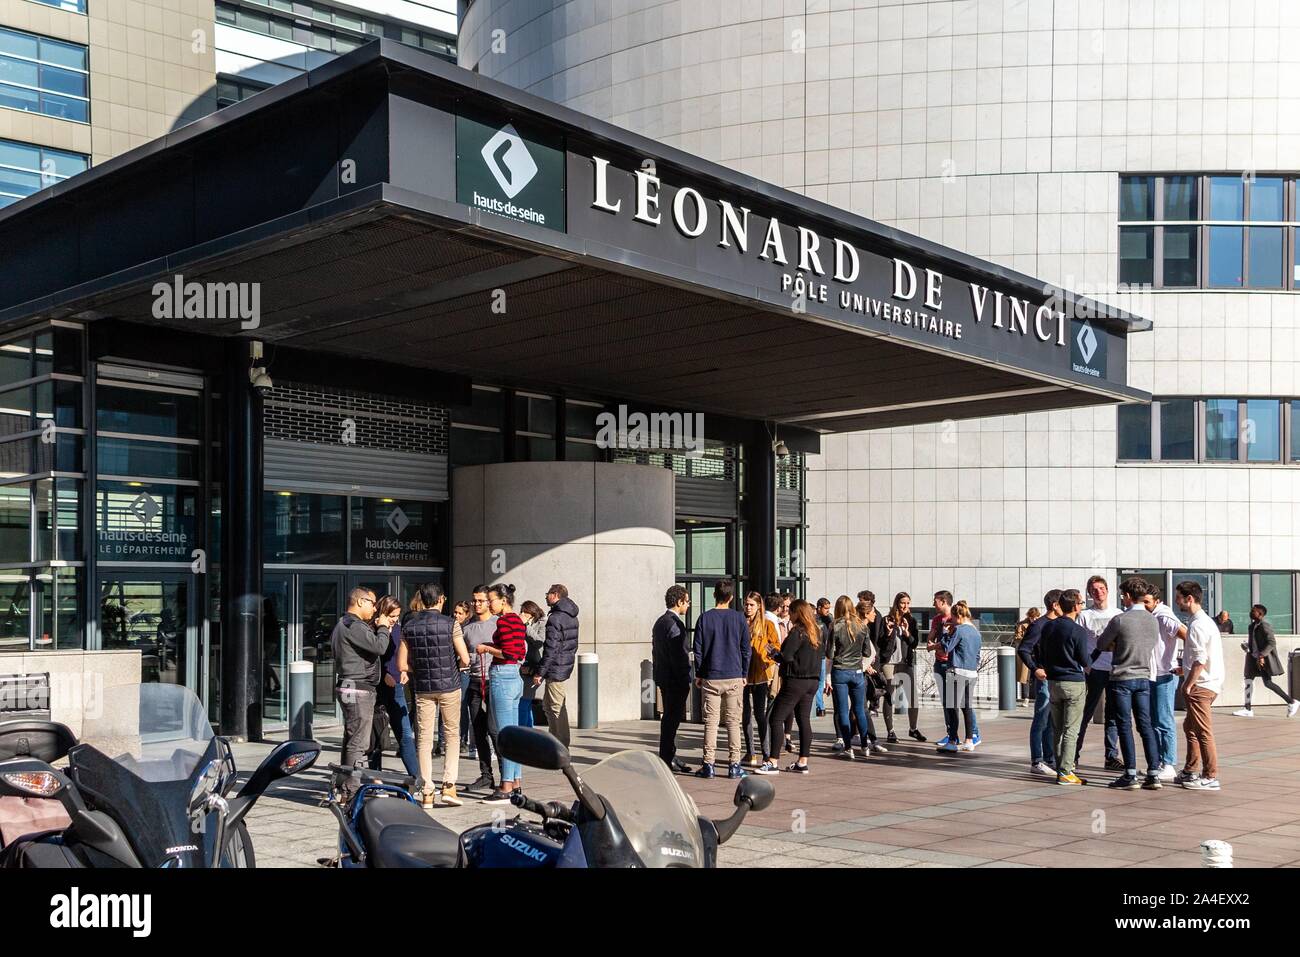 STUDENTS IN FRONT OF THE LEONARD DE VINCI UNIVERSITY, PARIS-LA DEFENSE, COURBEVOIE, FRANCE Stock Photo